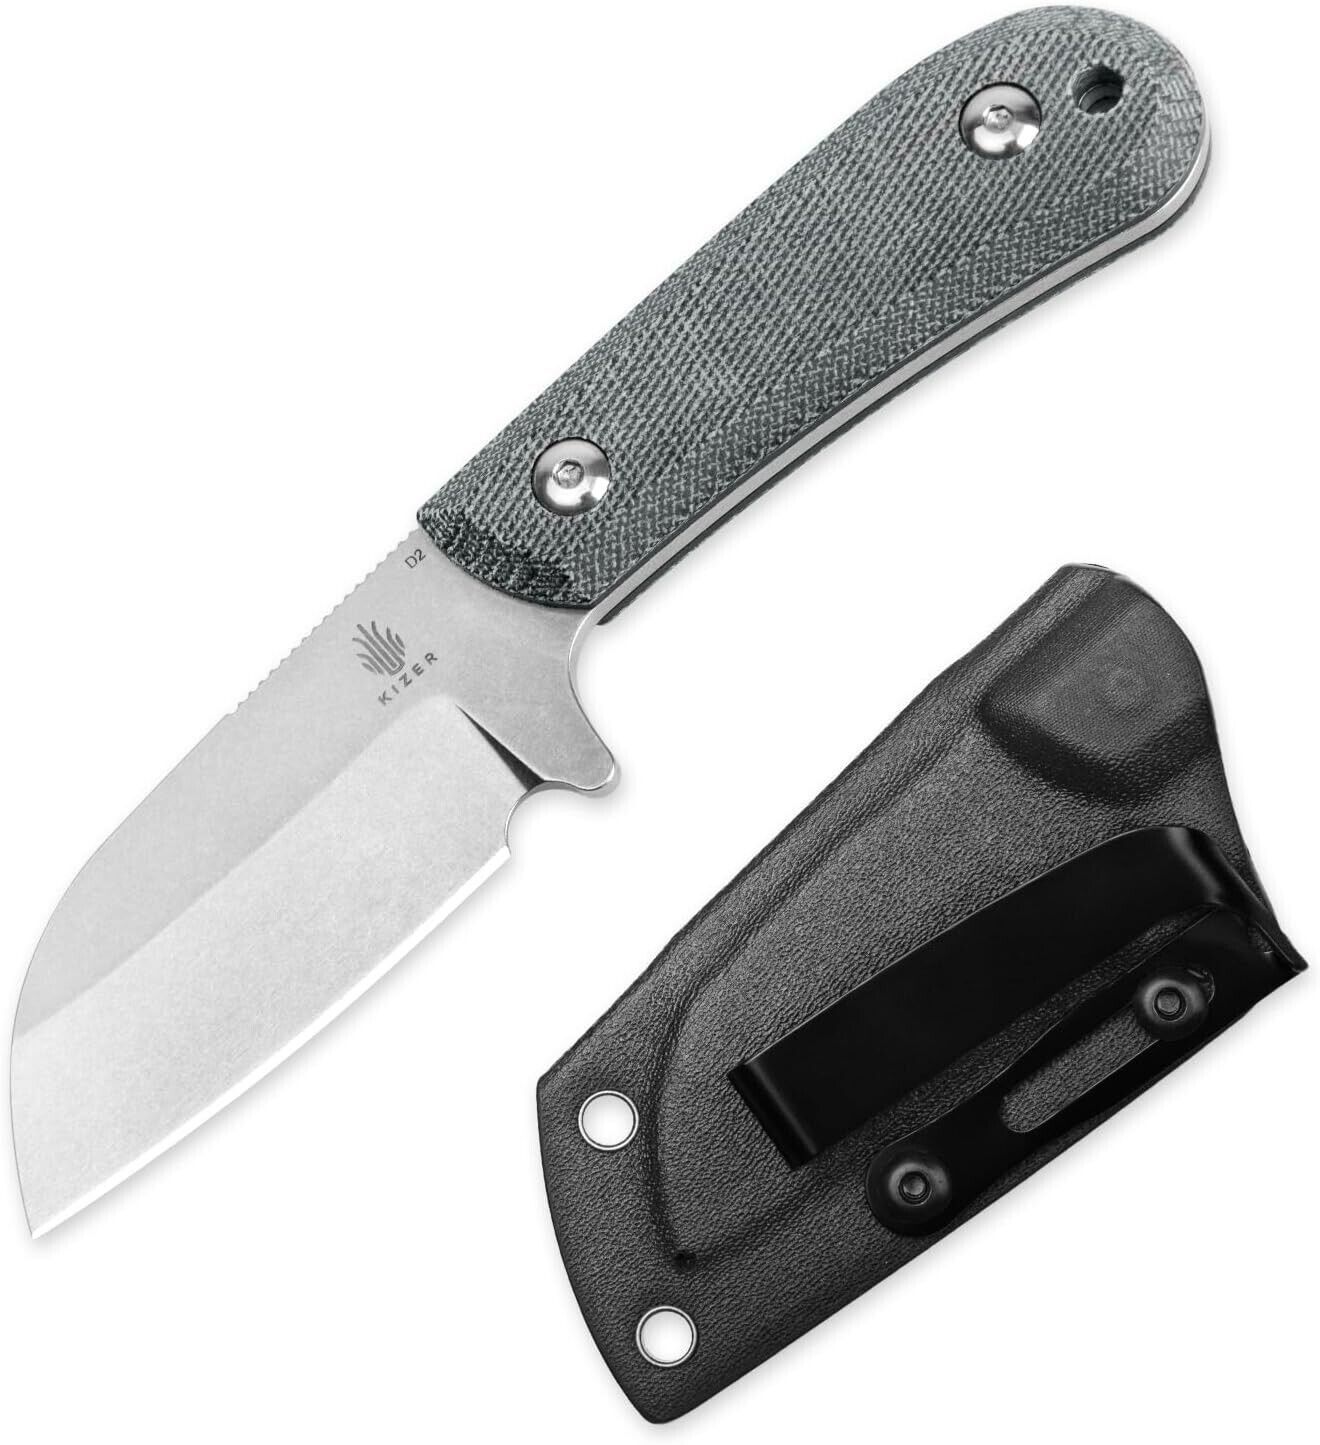 Kizer Knife Deckhand D2 Compact Fixed Blade G10+Micarta Handle 1062A1